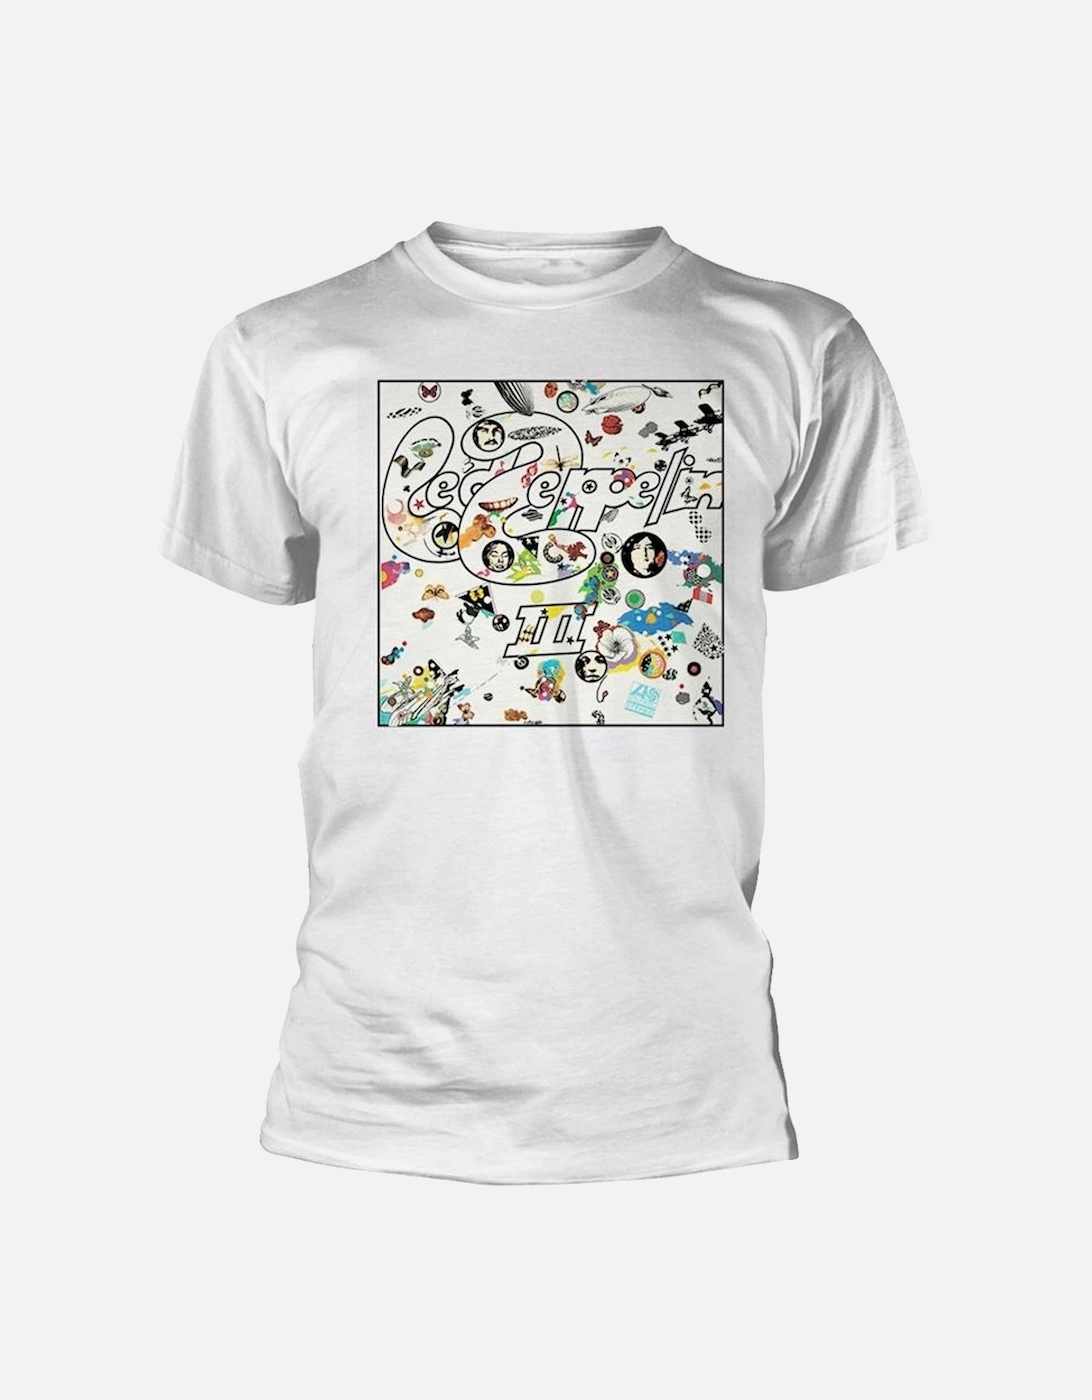 Unisex Adult III Album T-Shirt, 2 of 1